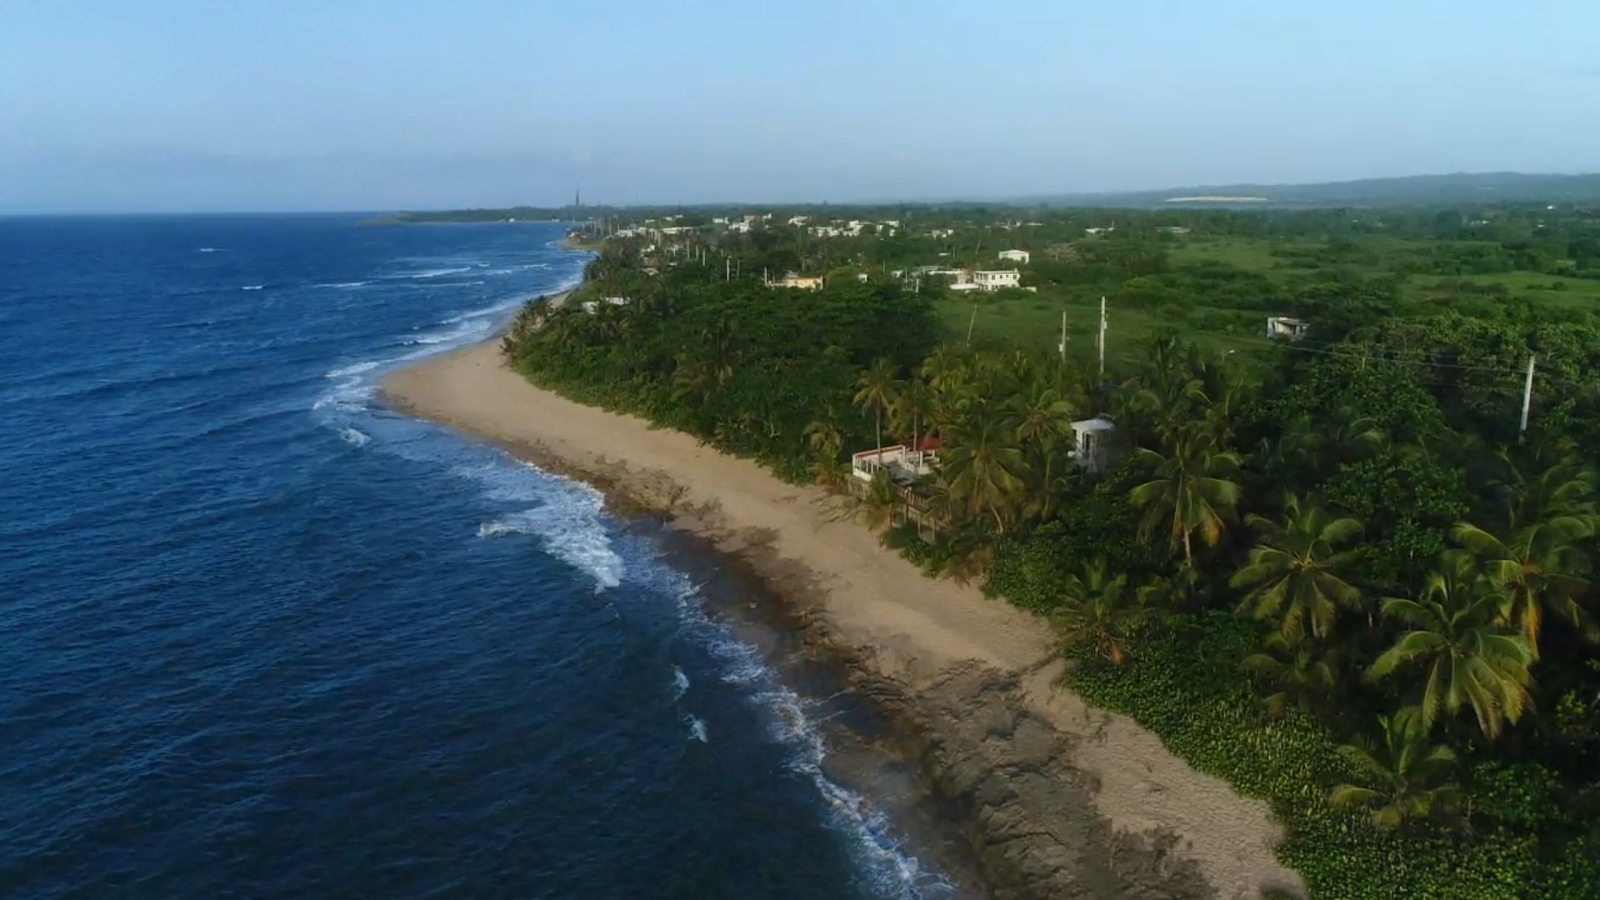 Zdjęcie Playa Punta Caracoles z przestronna plaża